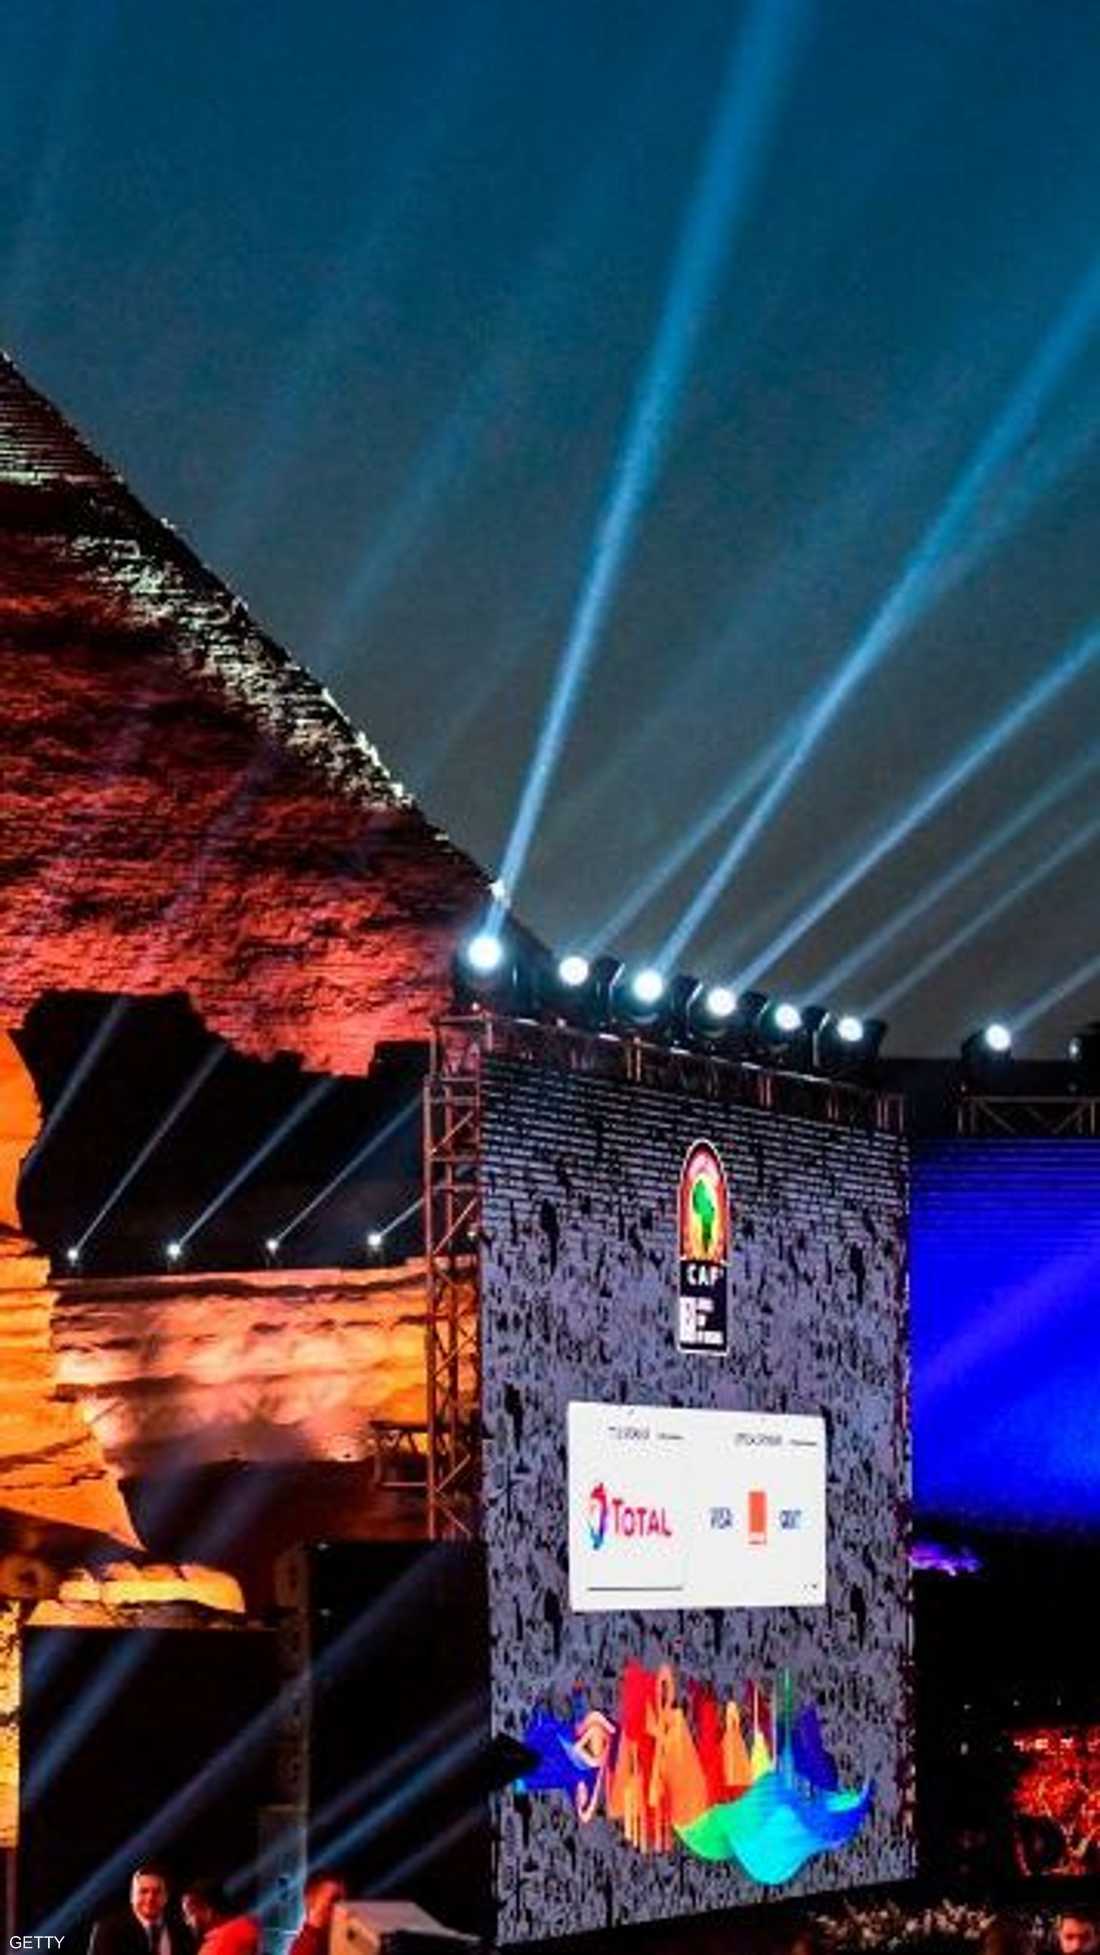 احتضن سفح الهرم بمحافظة الجيزة القريبة من العاصمة المصرية قرعة كأس الأمم الأفريقية لكرة القدم 2019، في أجواء احتفالية، حضرها عدد من نجوم القارة السمراء.